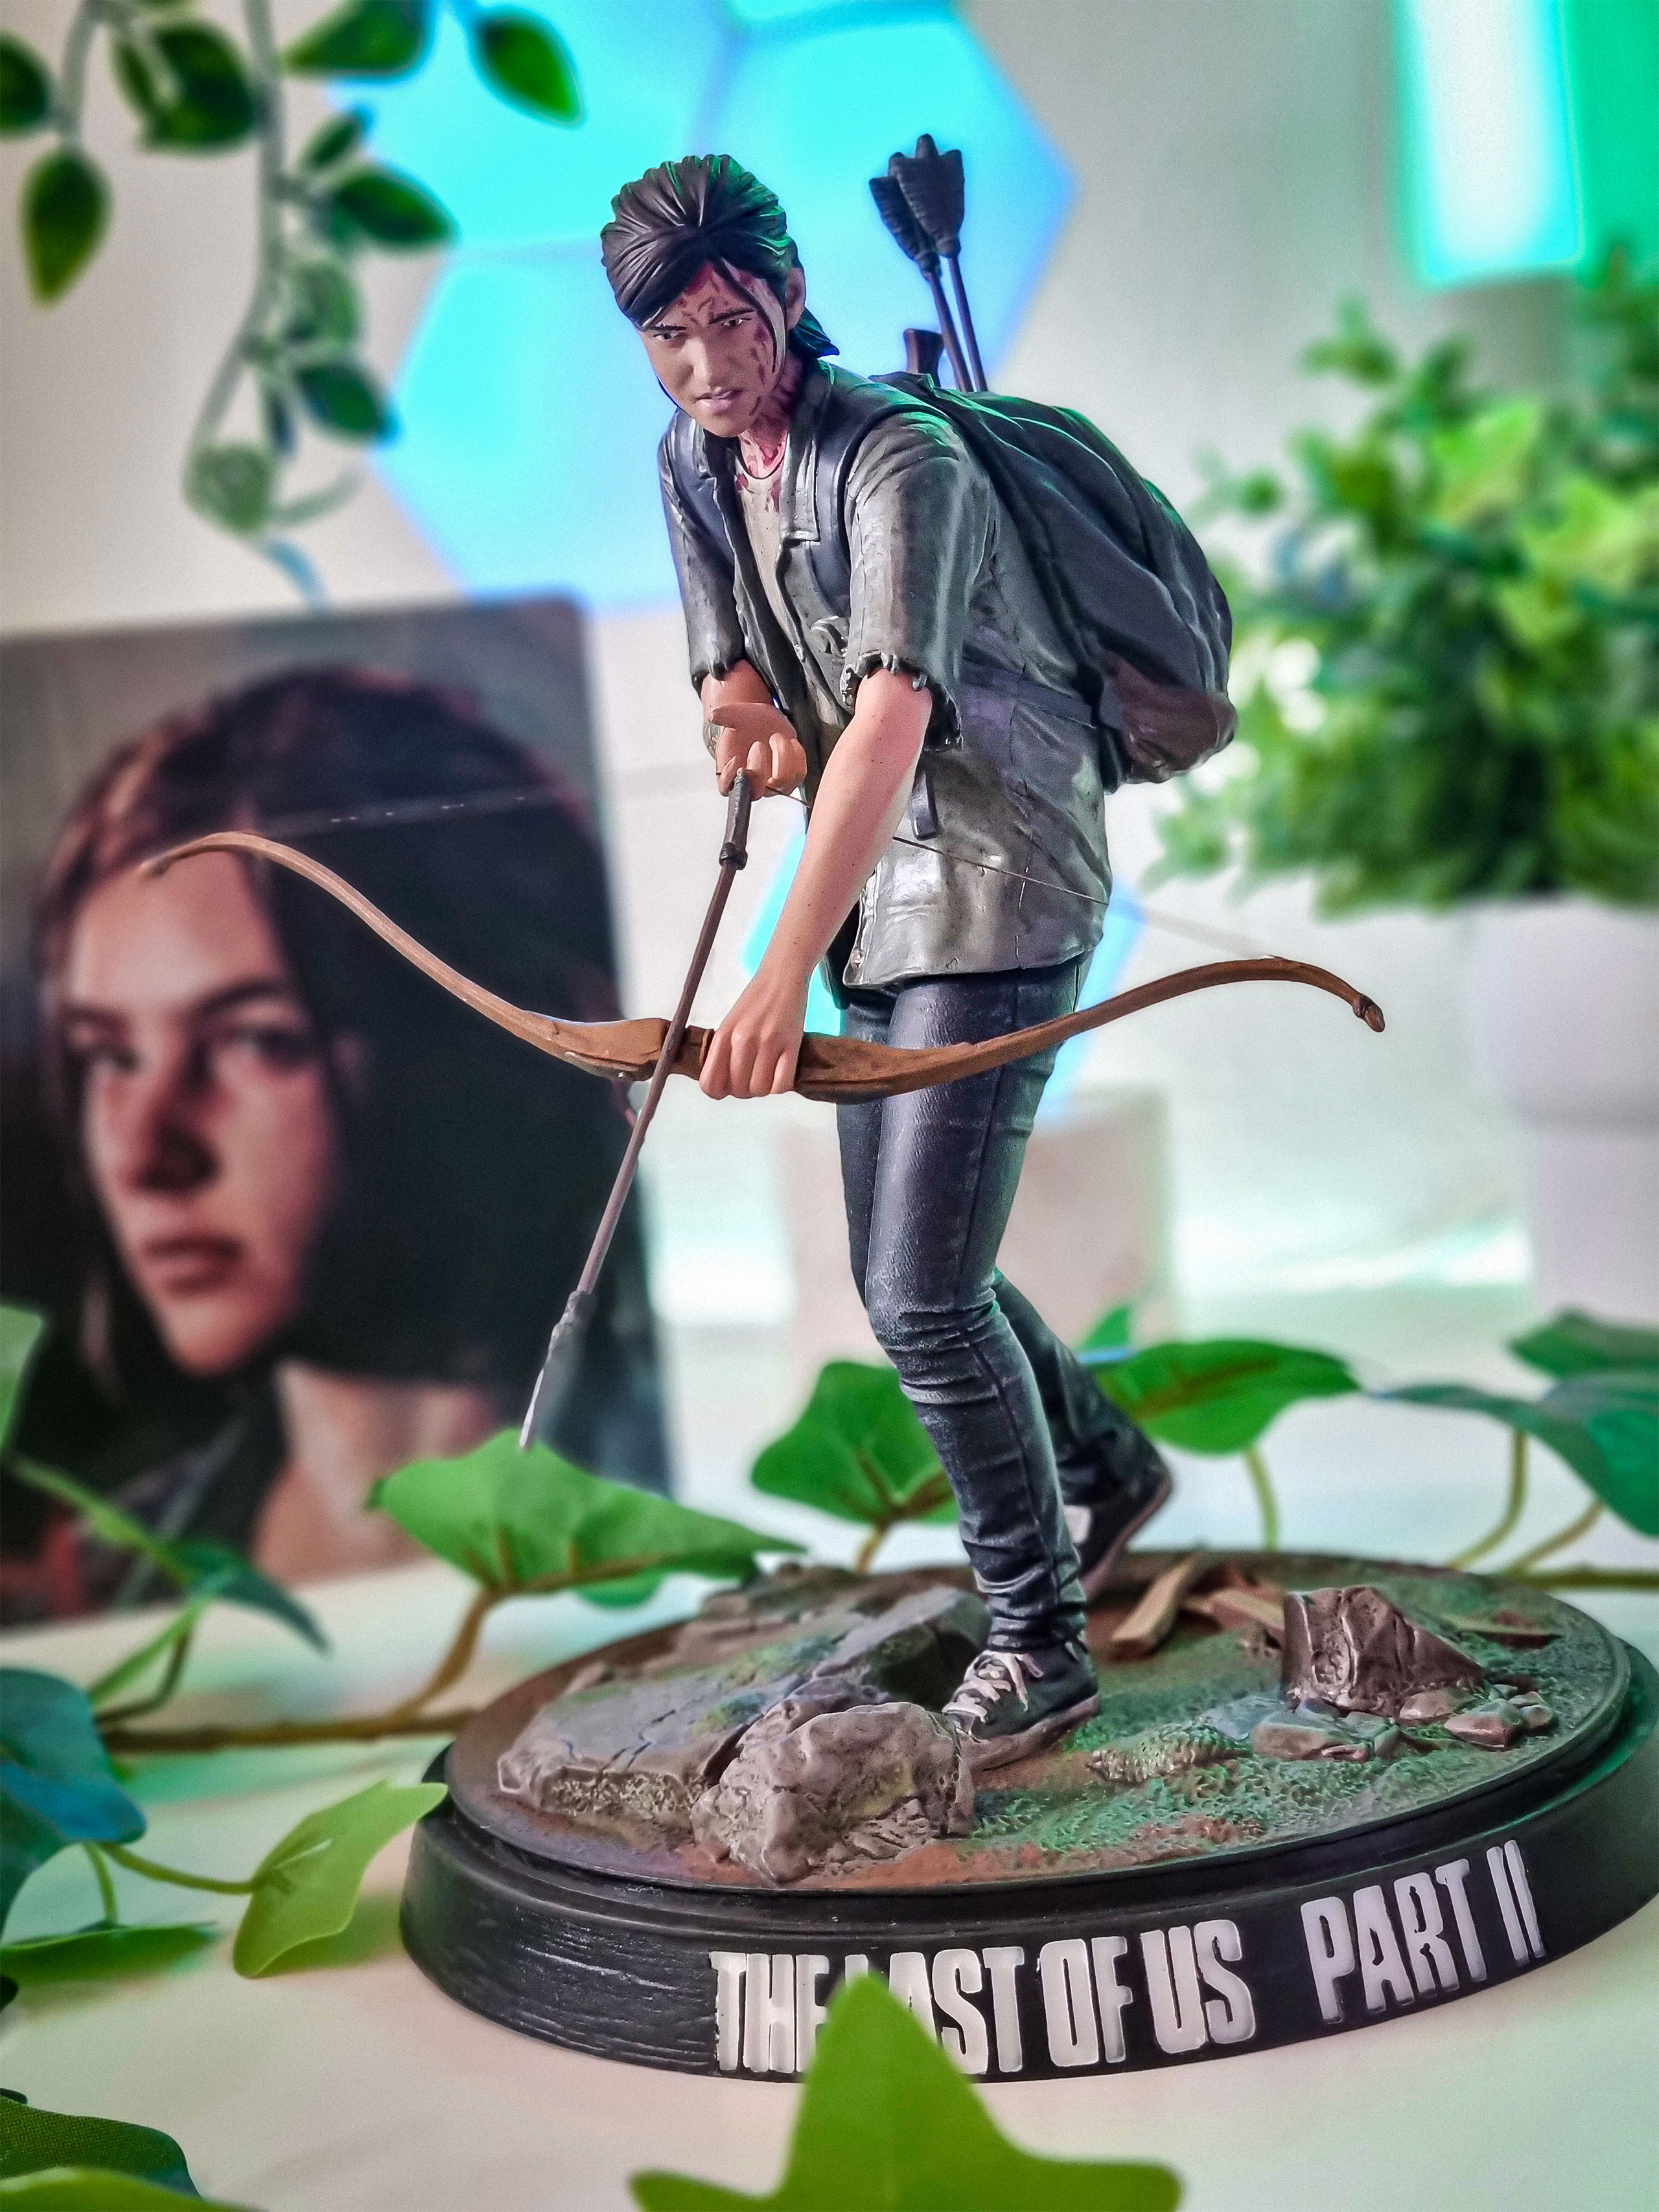 The Last of Us - Statue d'Ellie avec arc 21 cm